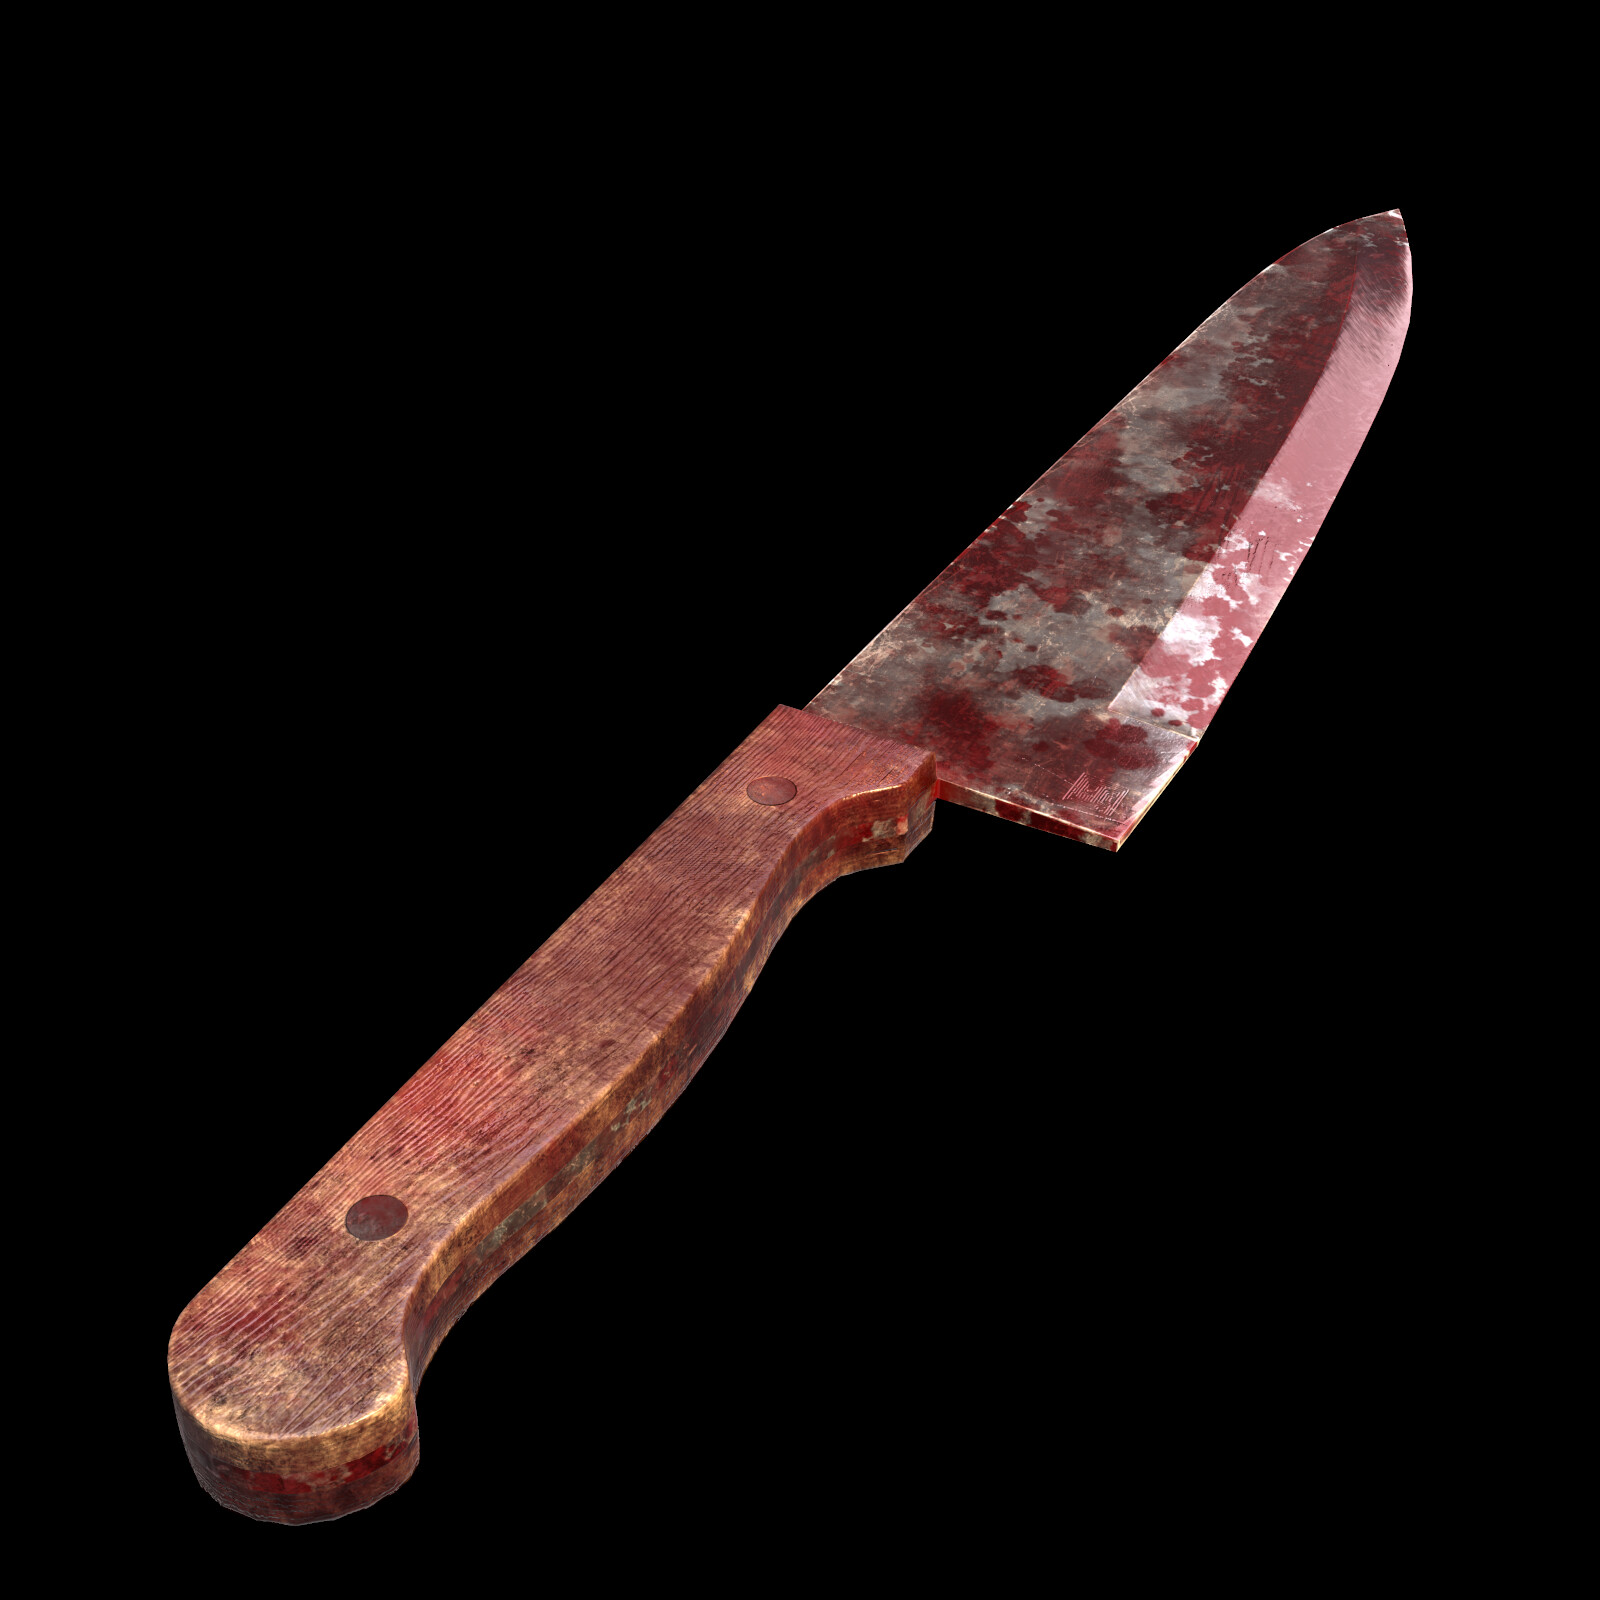 ArtStation - Medieval Butcher Knives